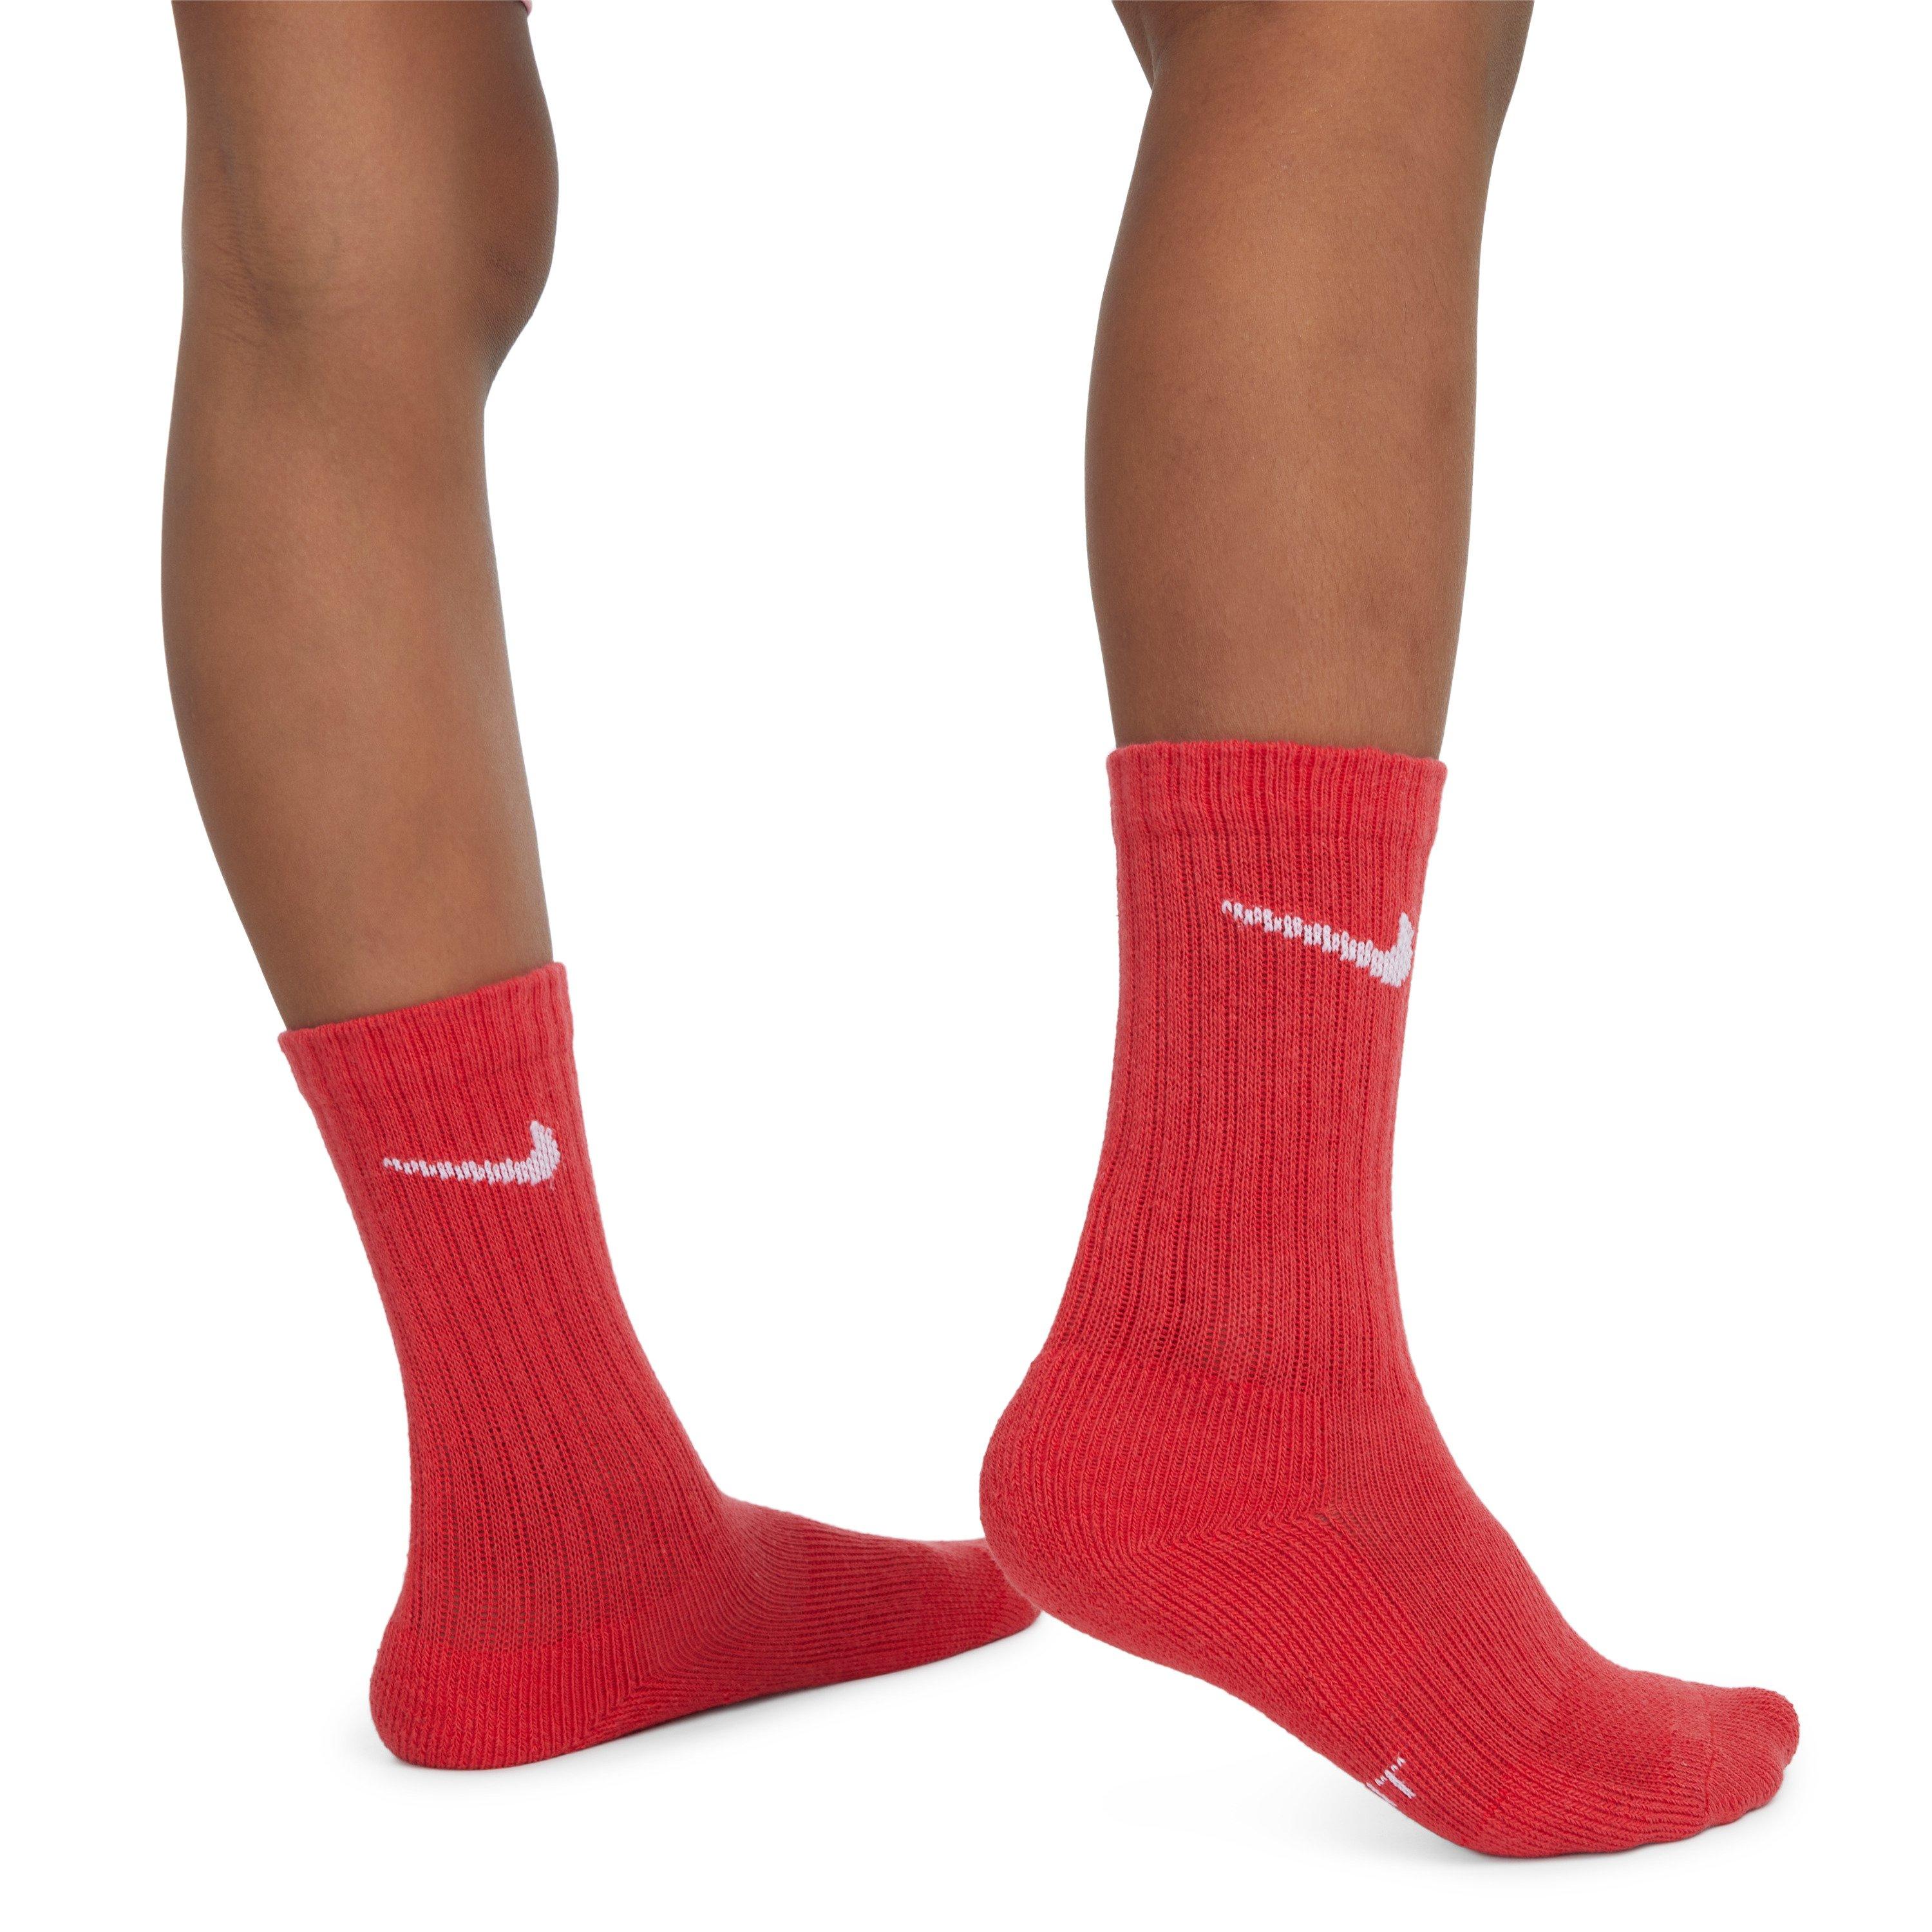 Nike Elite Unisex Crew Basketball Socks - White/Red - Hibbett